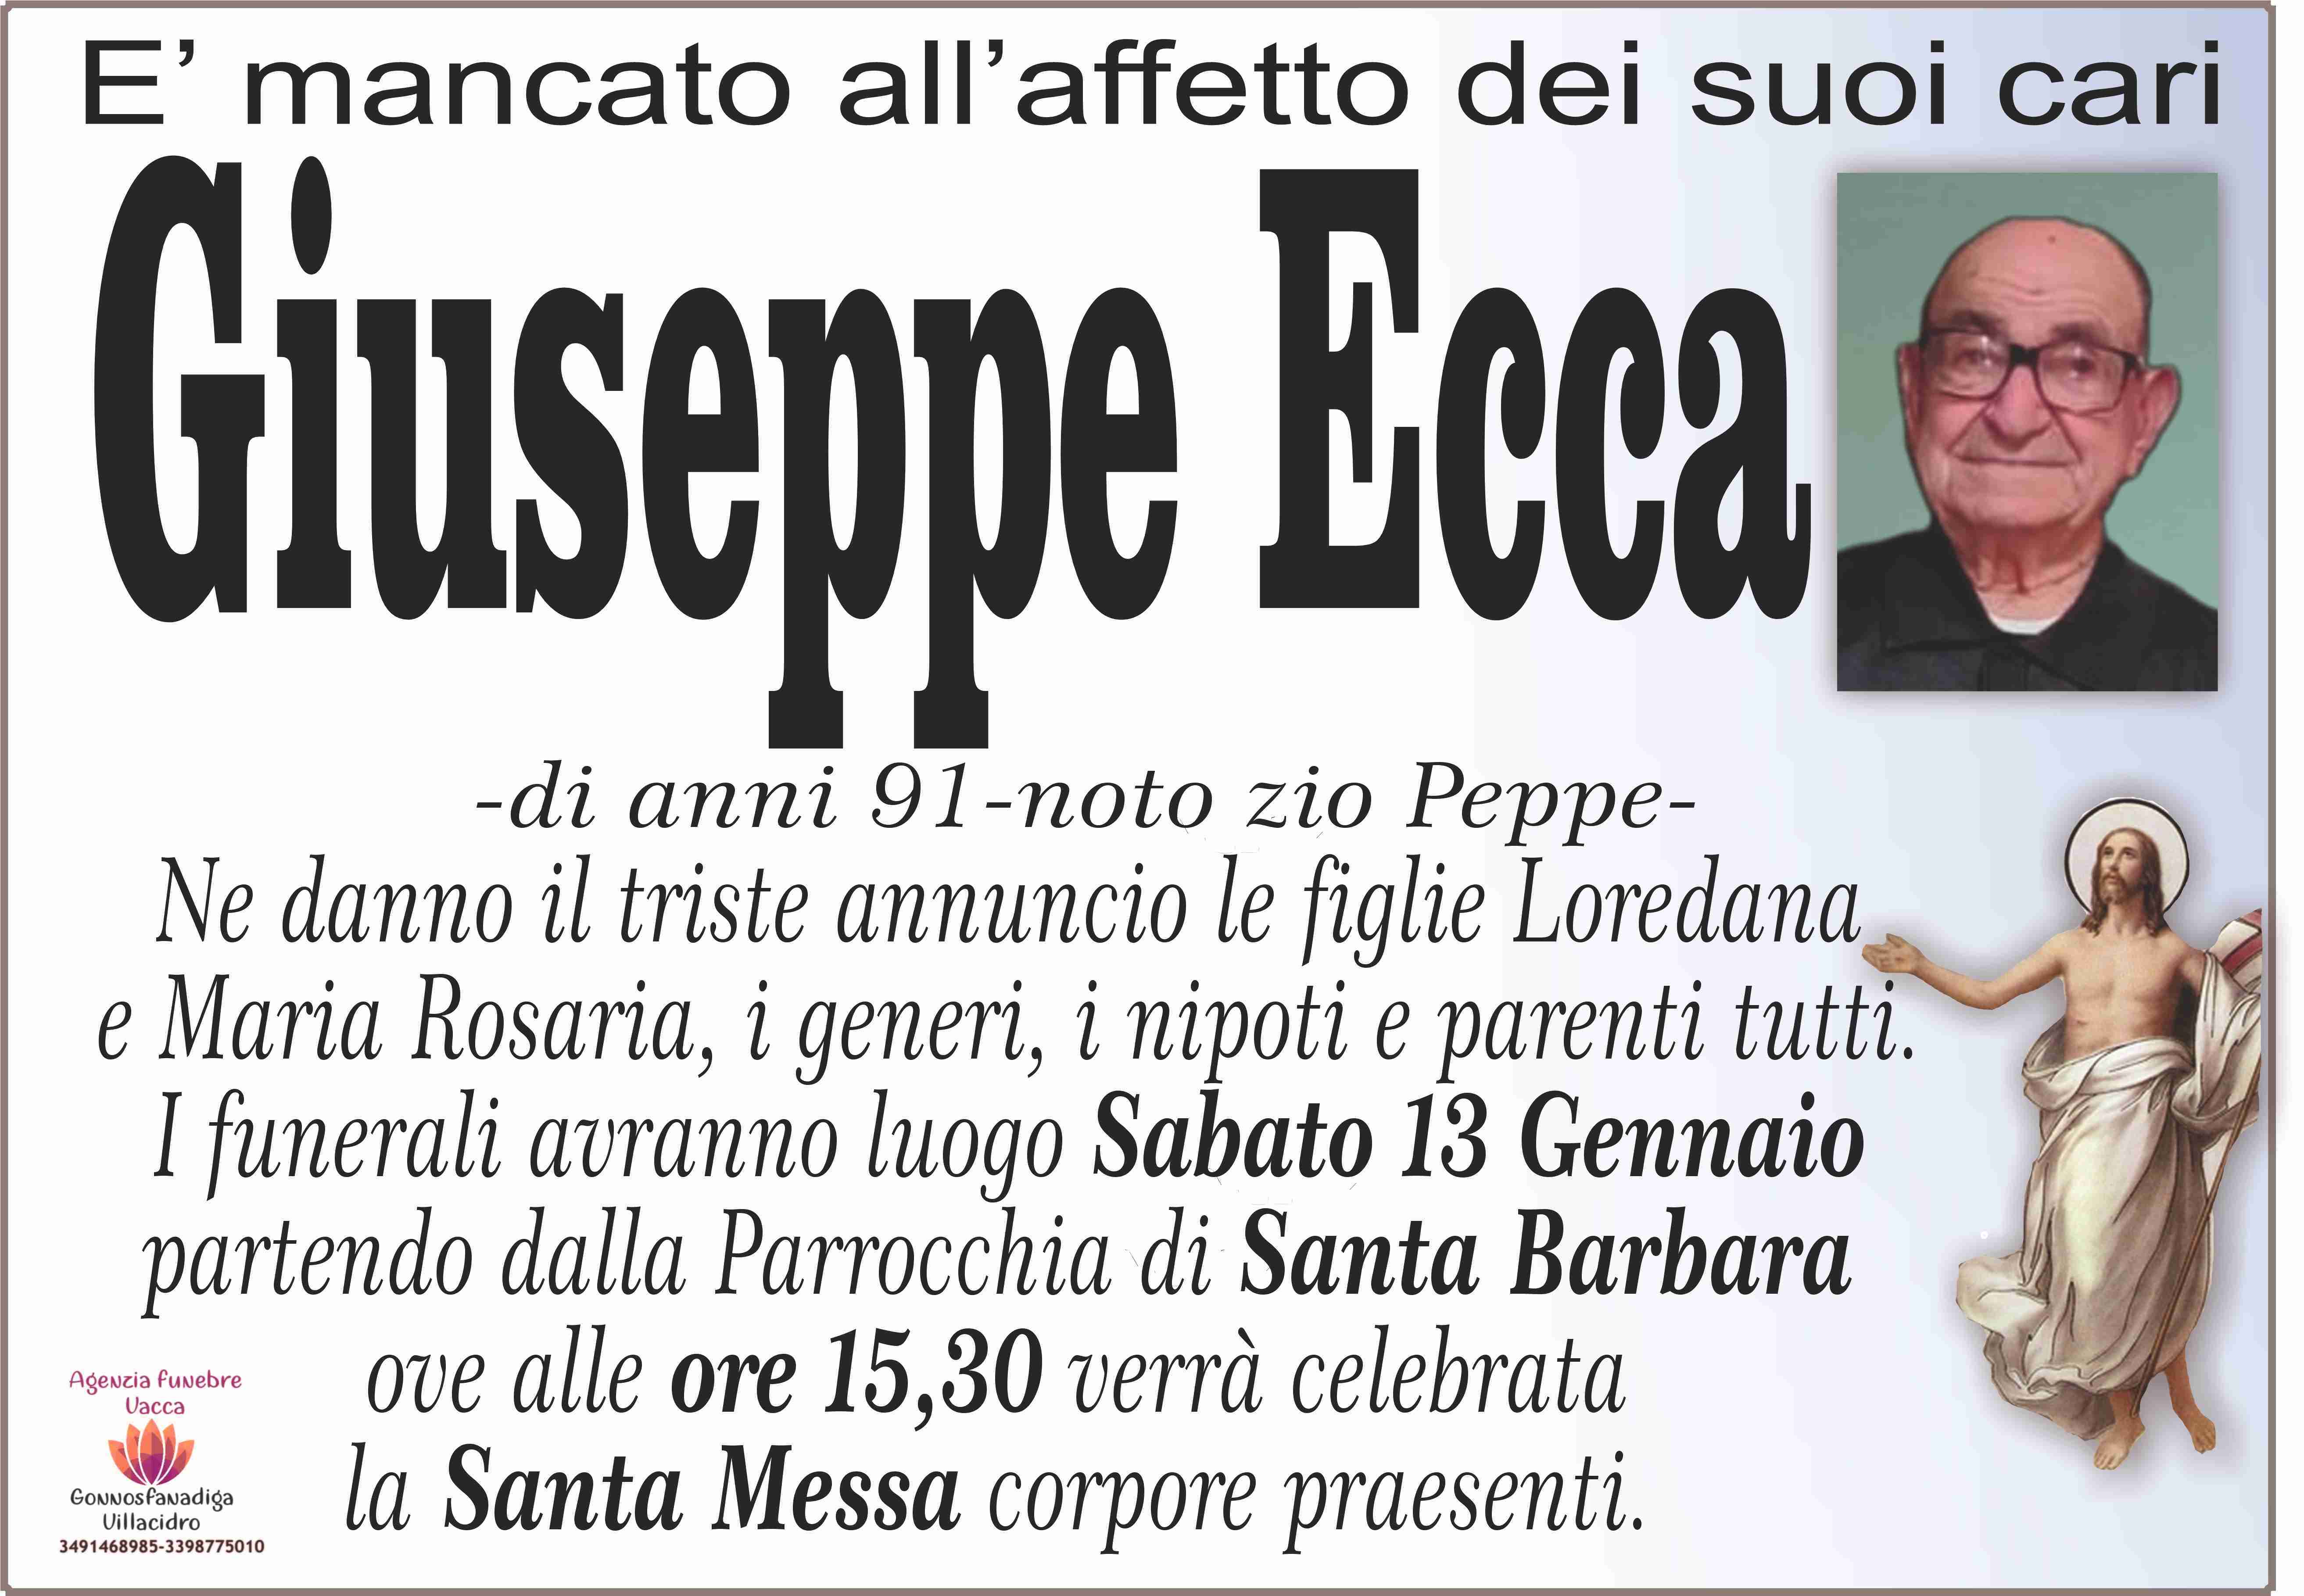 Giuseppe Ecca